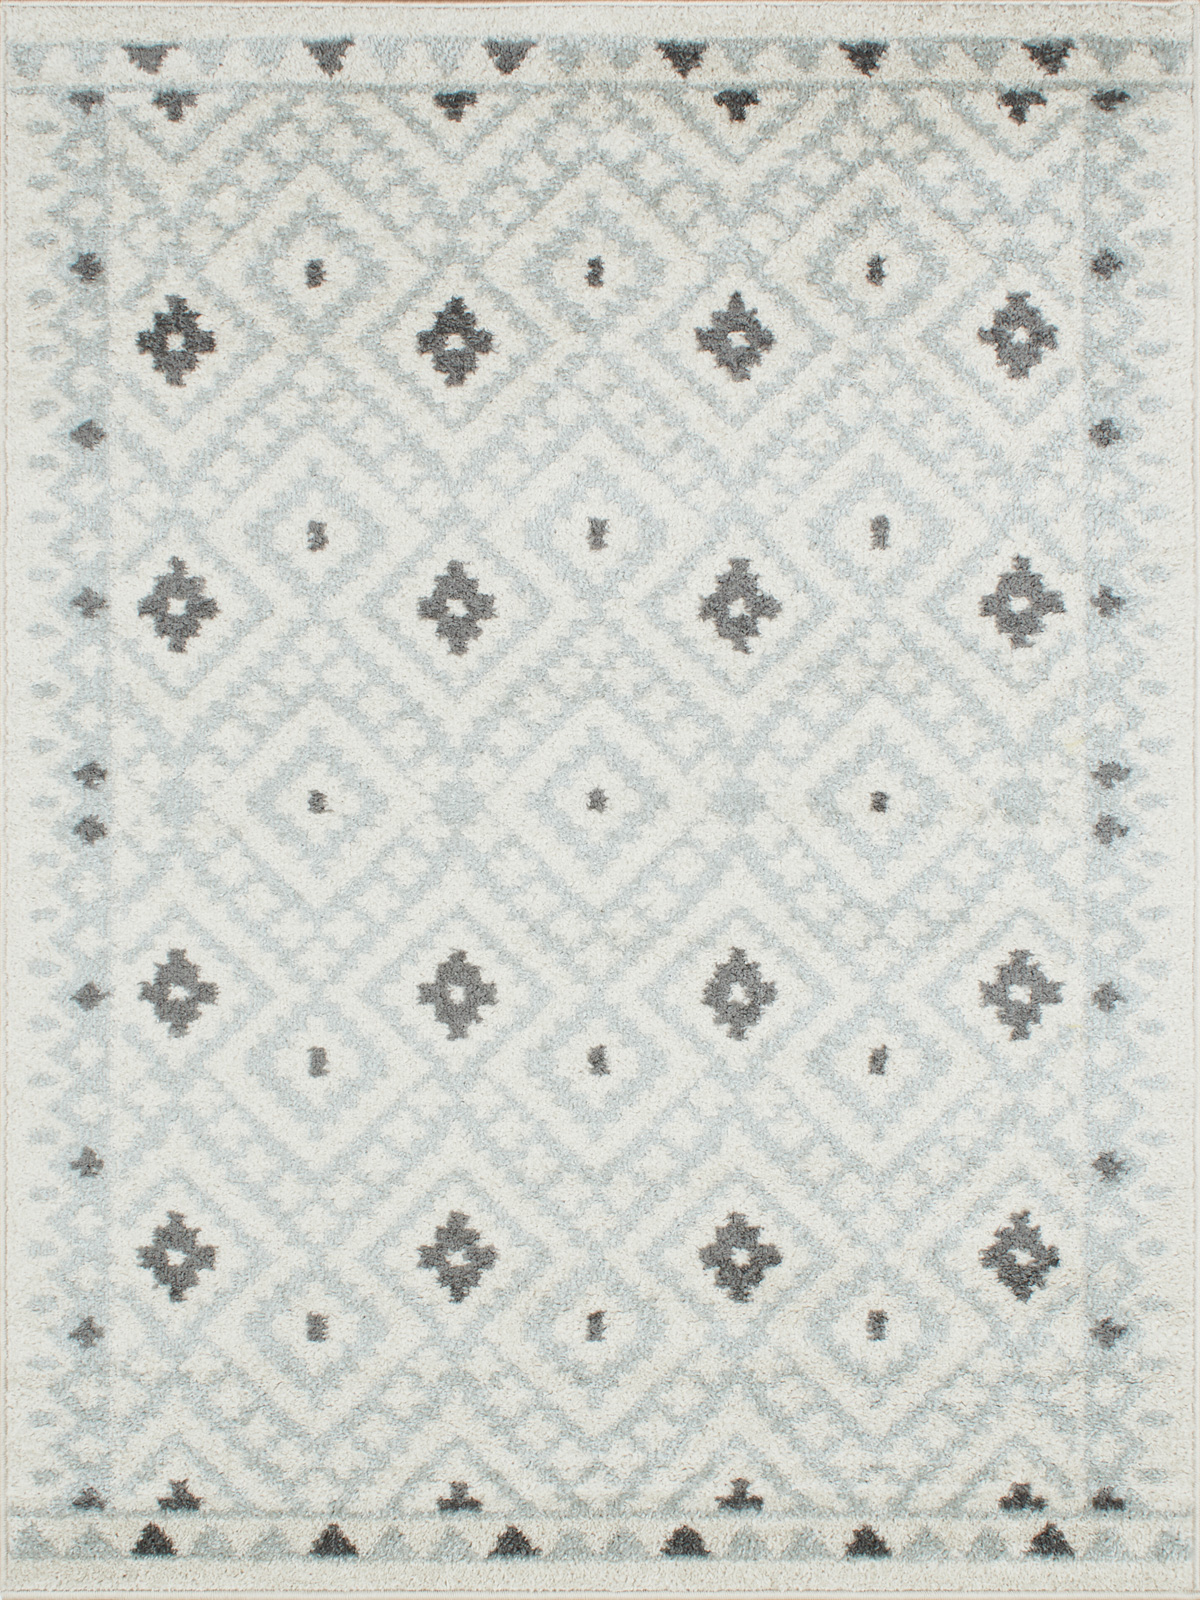 Tapis moderne motif géométrique gris - 120x160